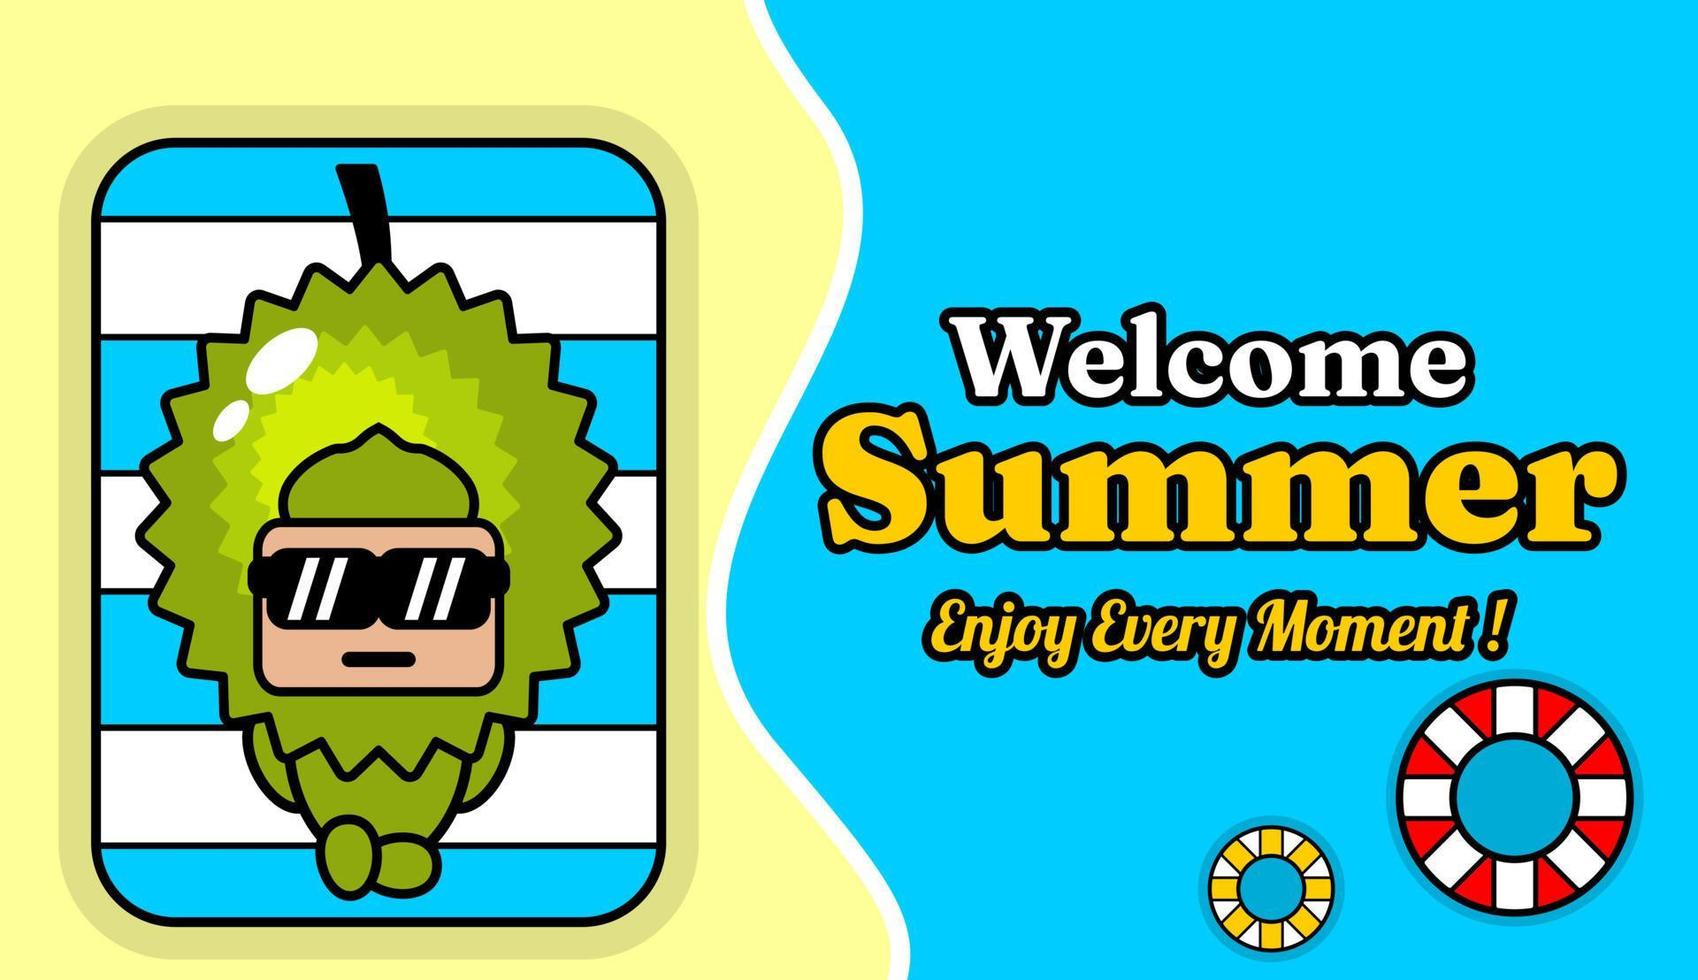 diseño de fondo de playa y arena de verano con texto disfruta de cada momento, con disfraz de mascota de fruta durian relajante vector